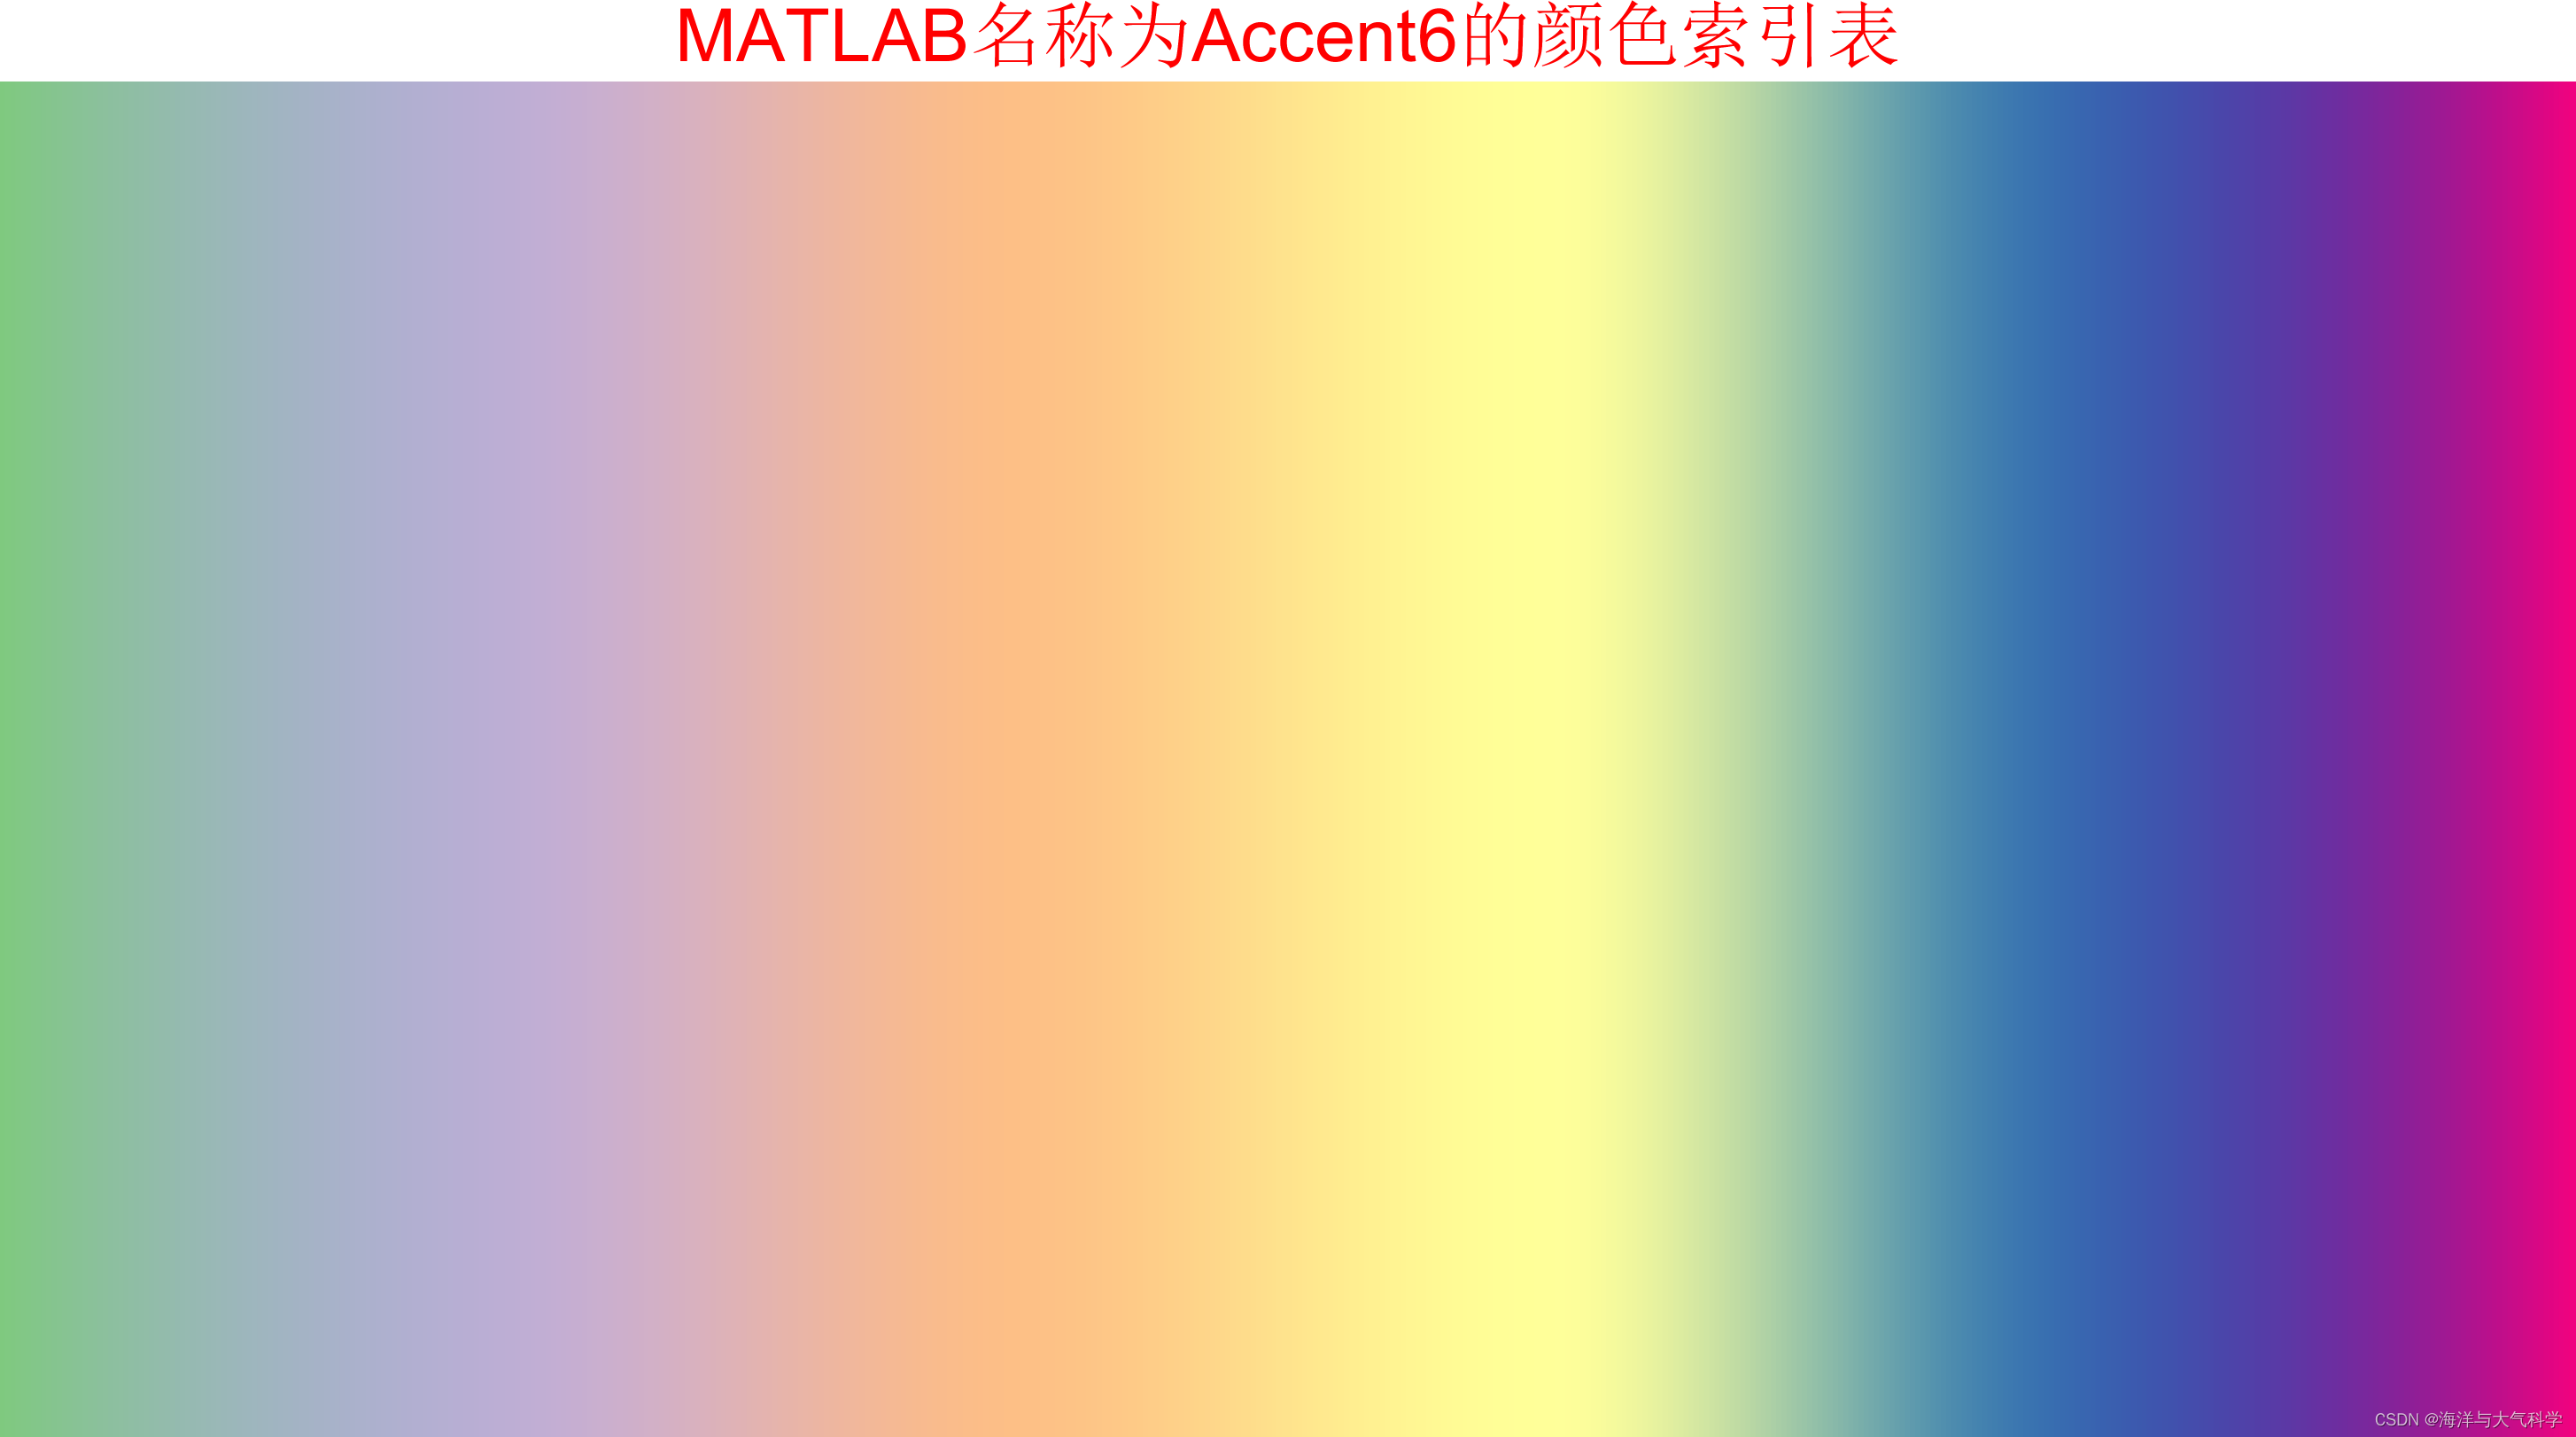 MATLAB颜色索引表---持续更新中--各个平台都可使用